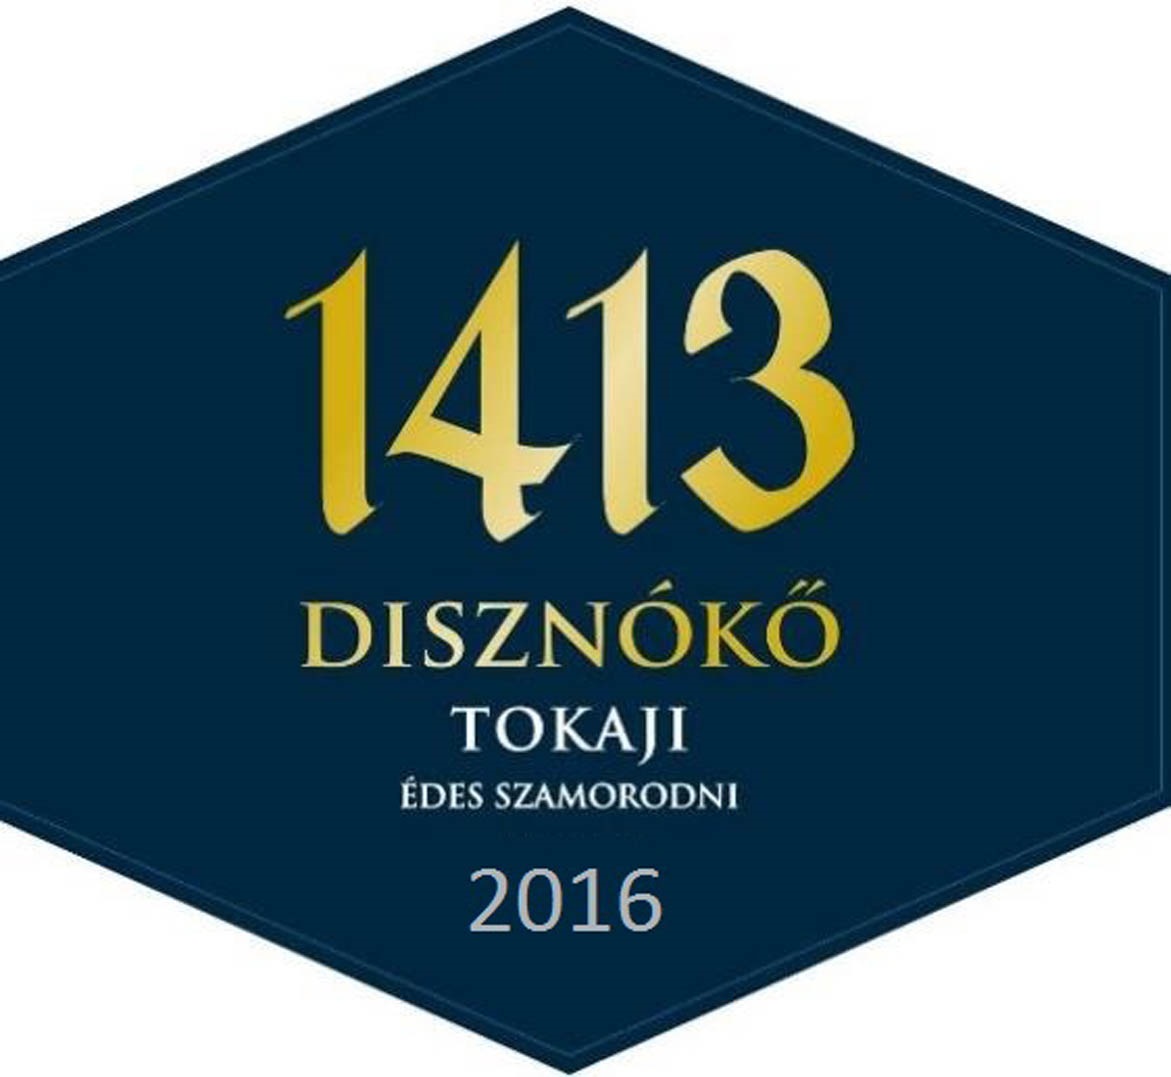 Disznoko Tokaj - 1413 label